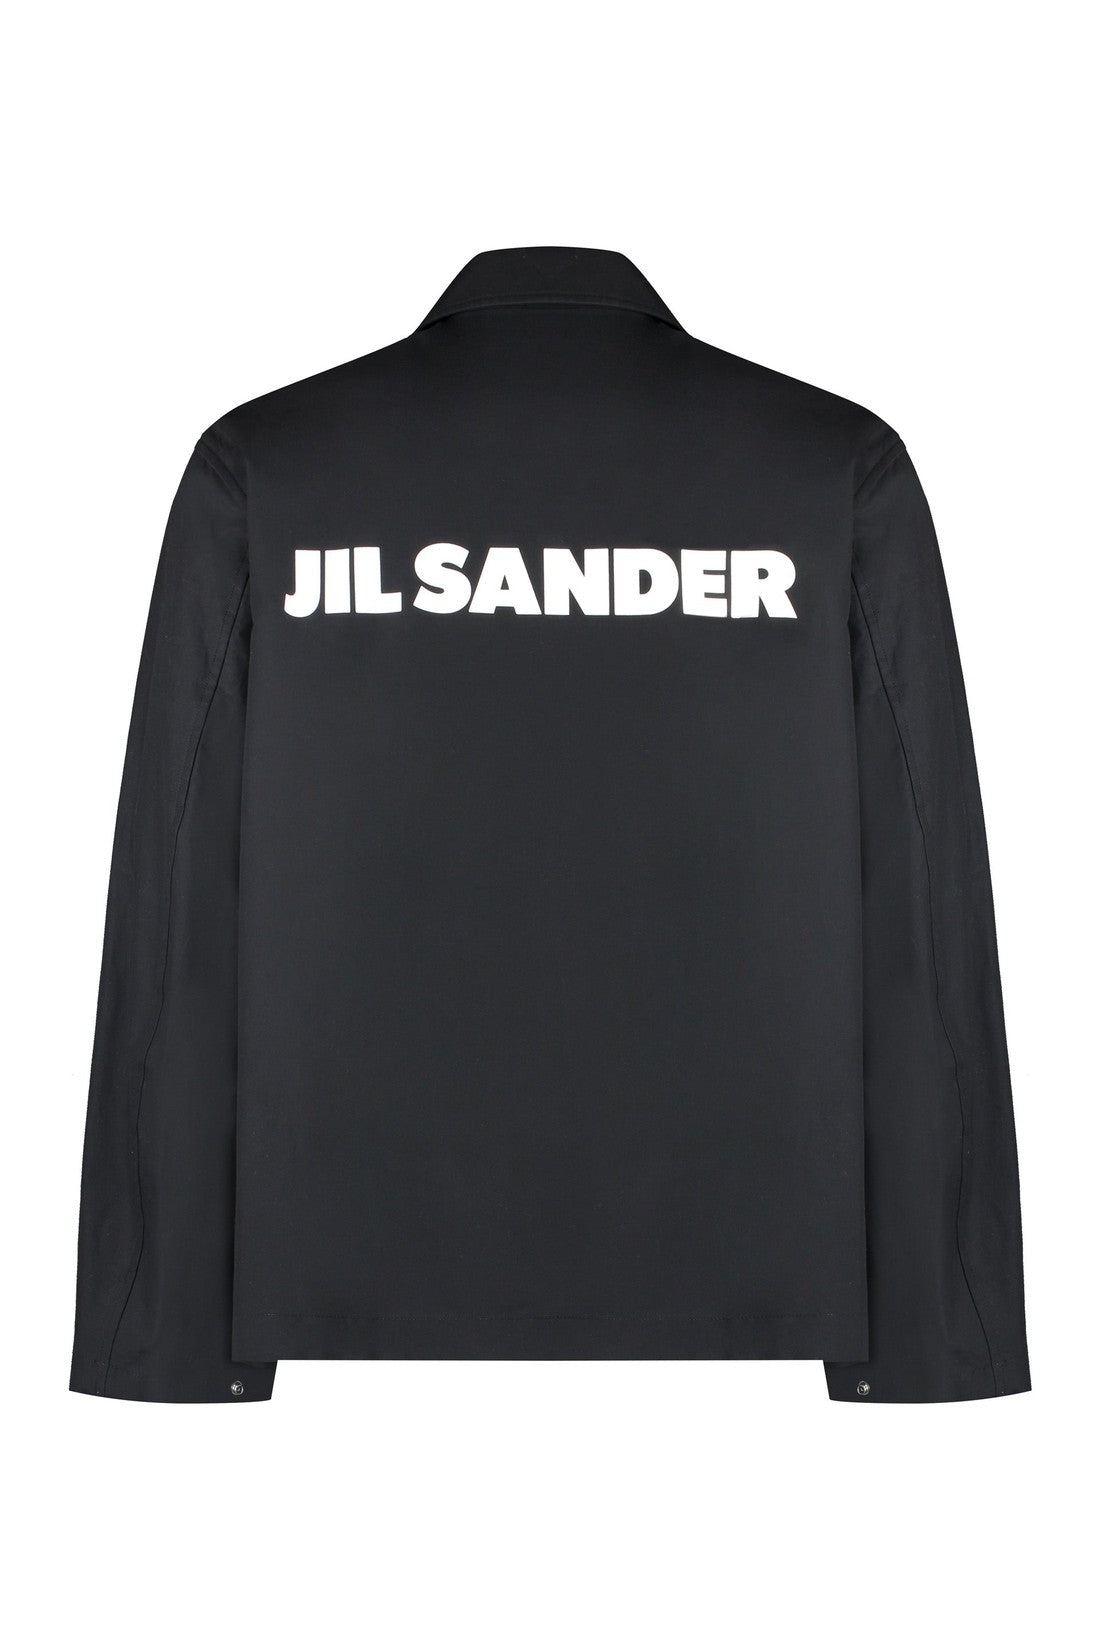 Jil Sander-OUTLET-SALE-Cotton overshirt-ARCHIVIST